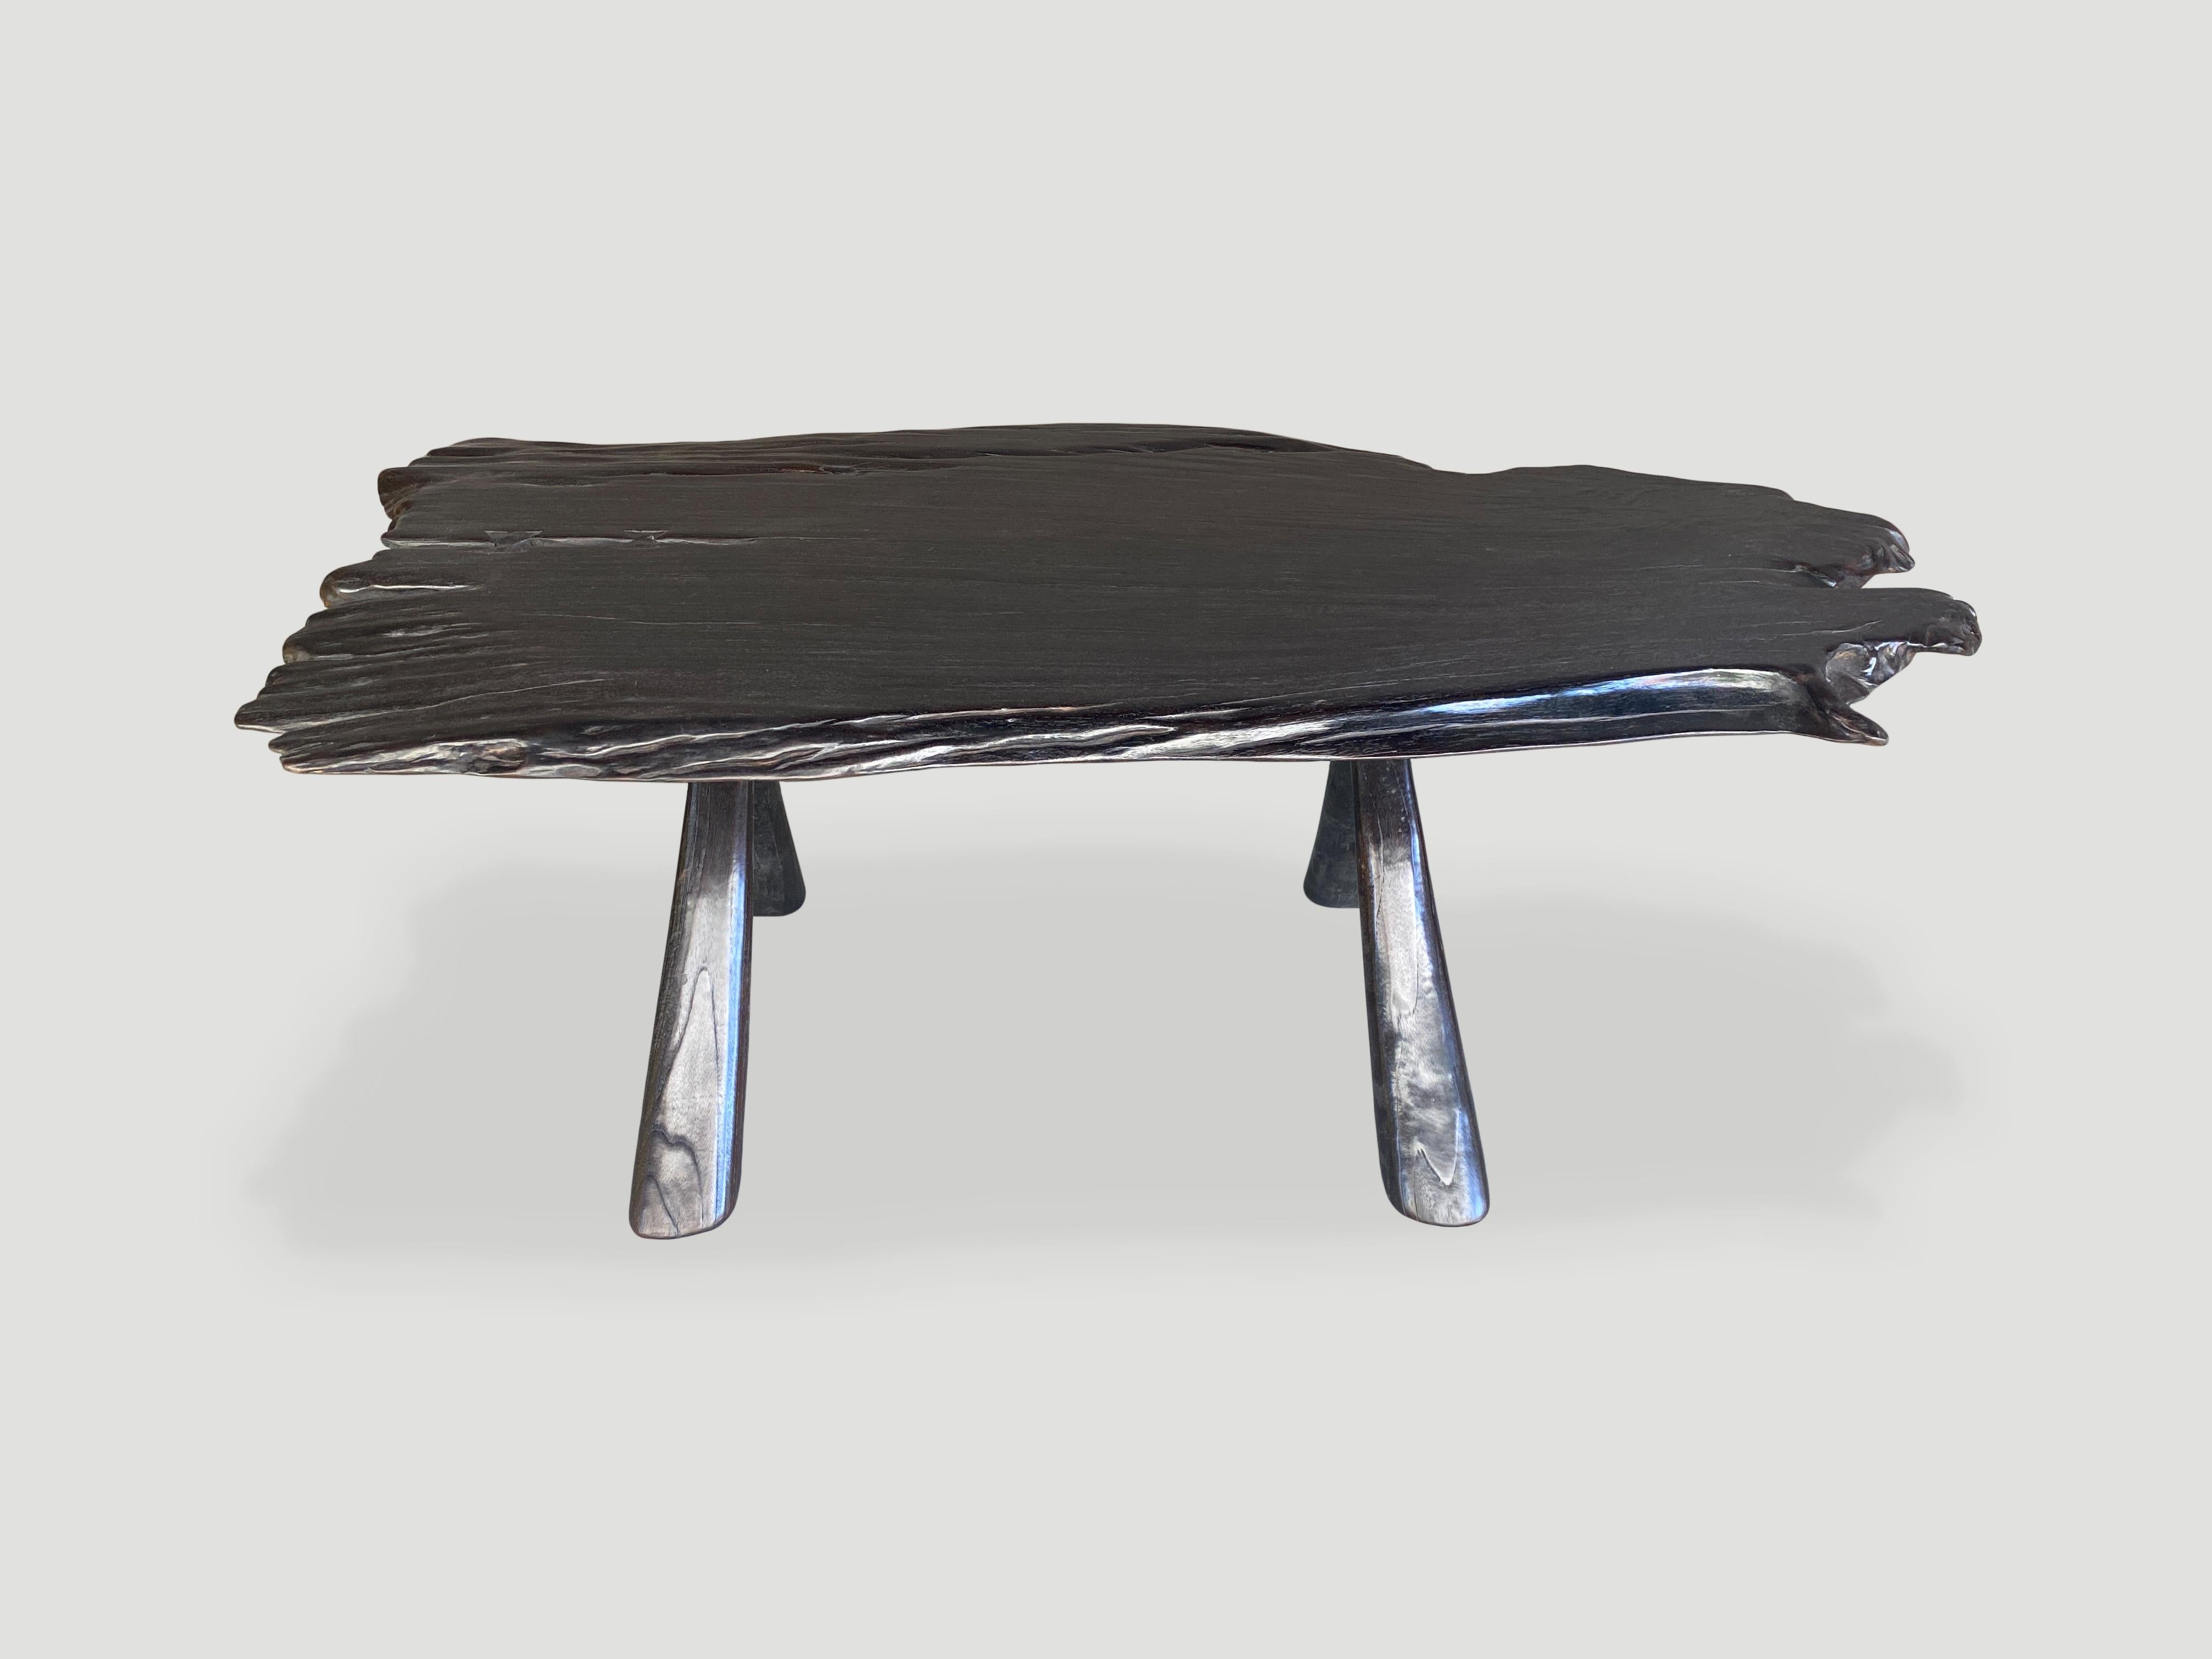 Impressionnante table basse simple en teck avec une belle érosion unique dans le bois. Nous avons ajouté une base en teck de style 